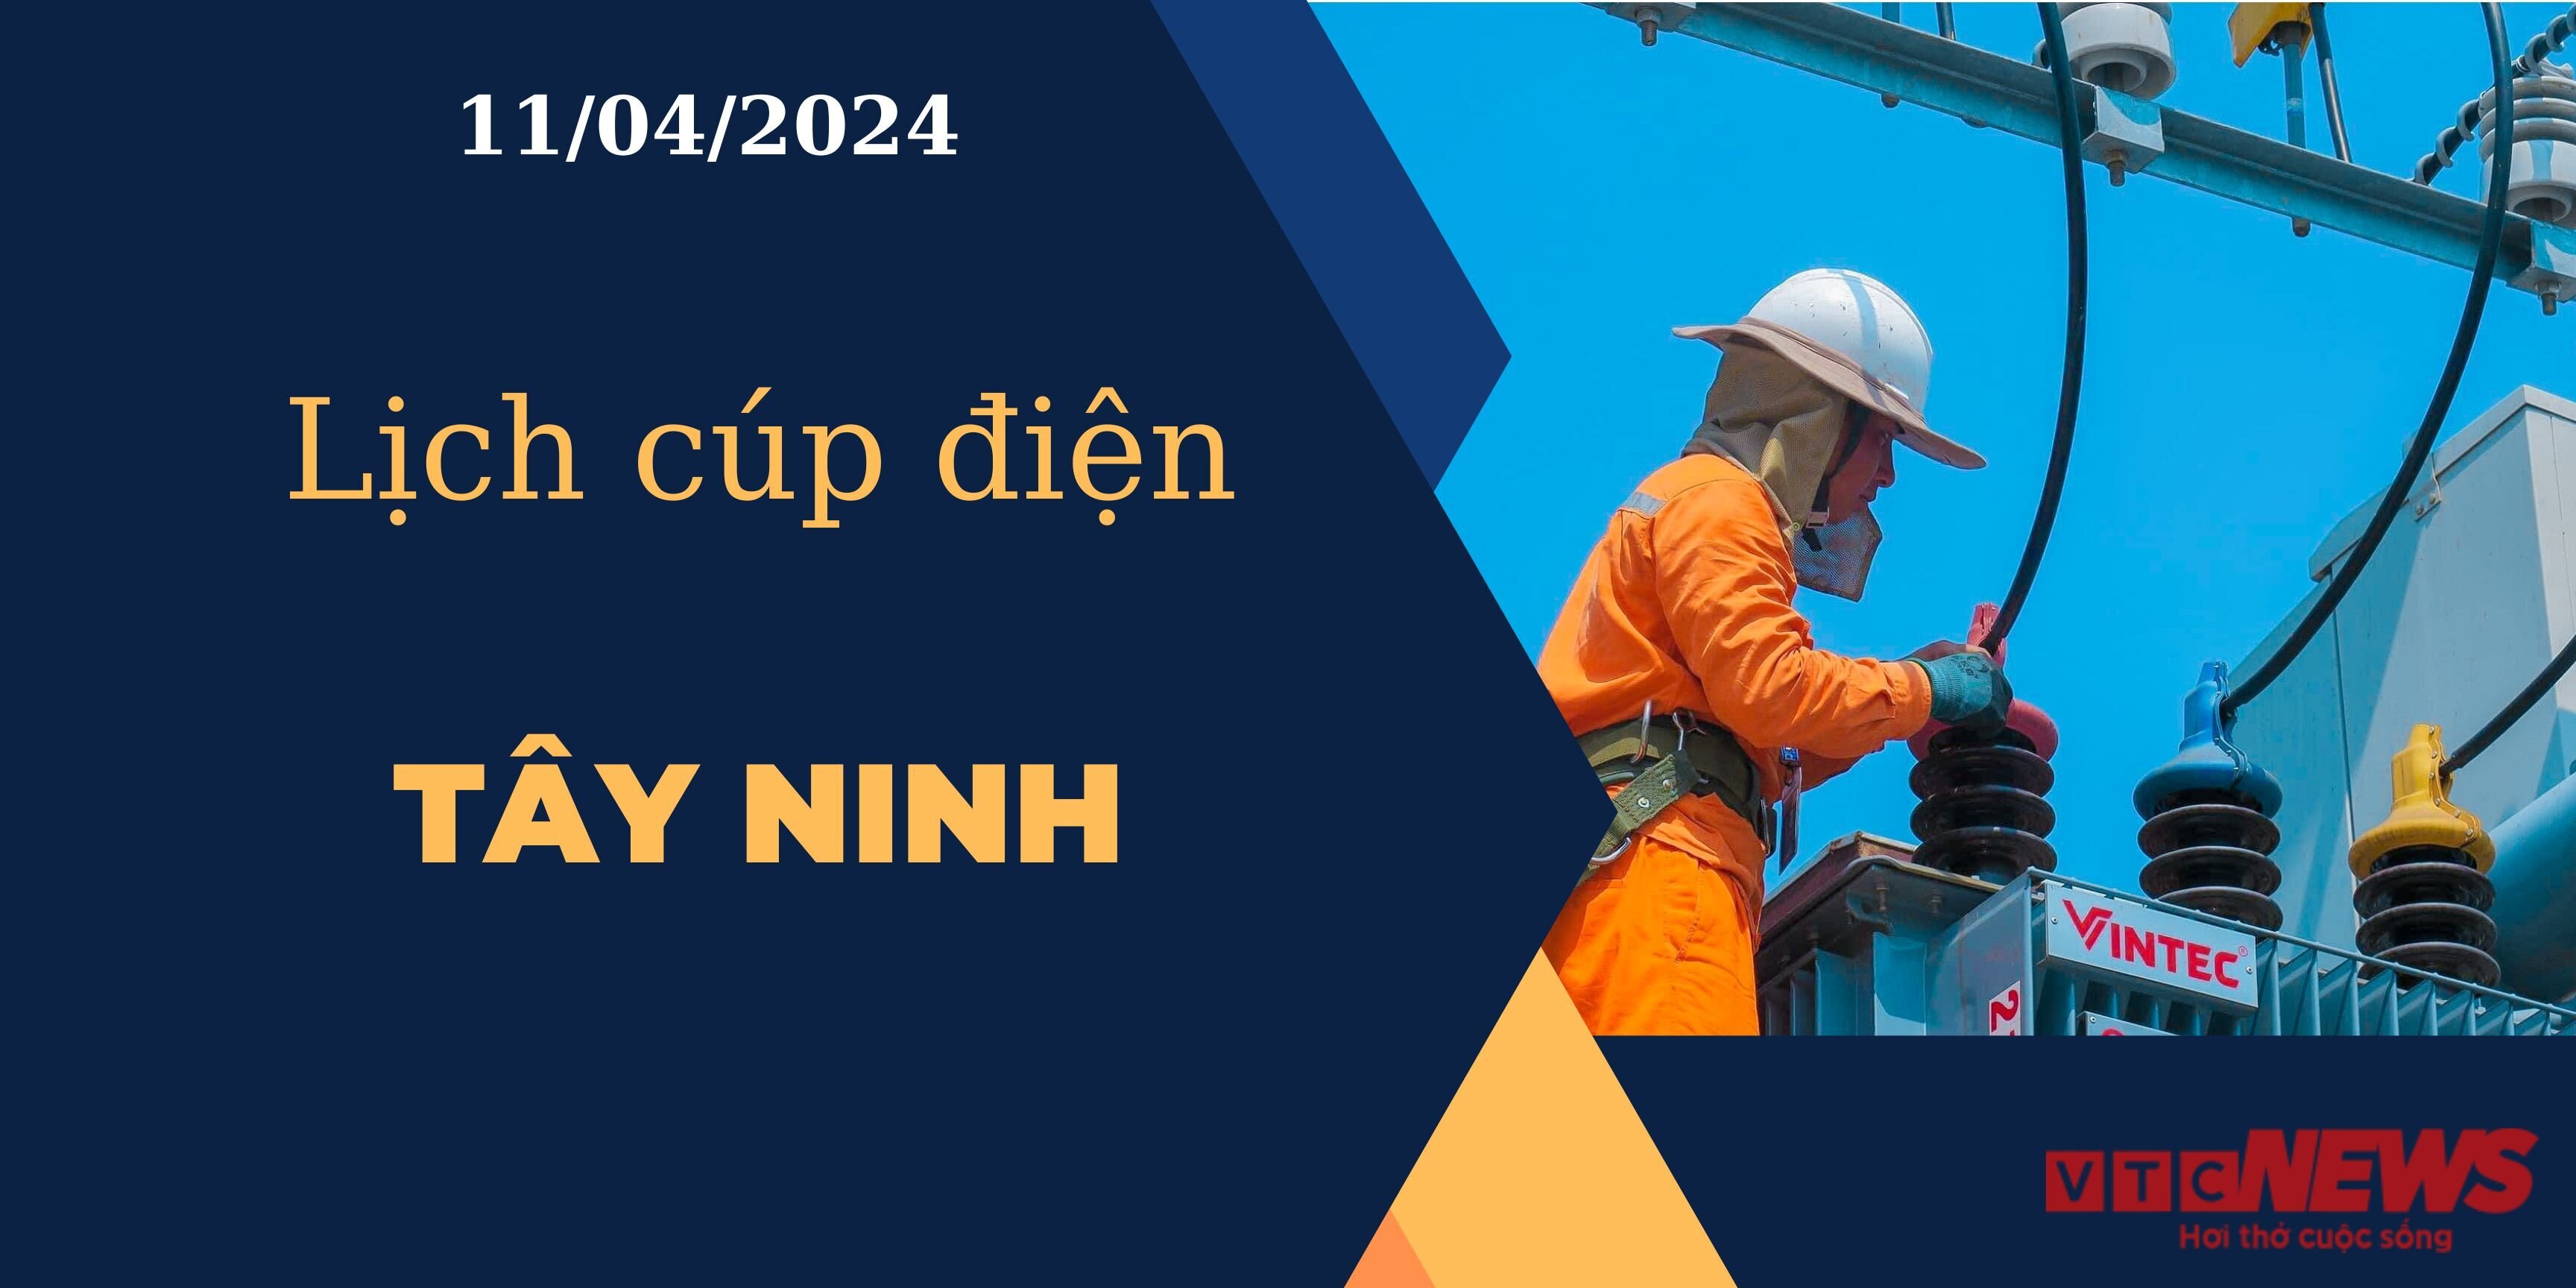 Lịch cúp điện hôm nay ngày 11/04/2024 tại Tây Ninh